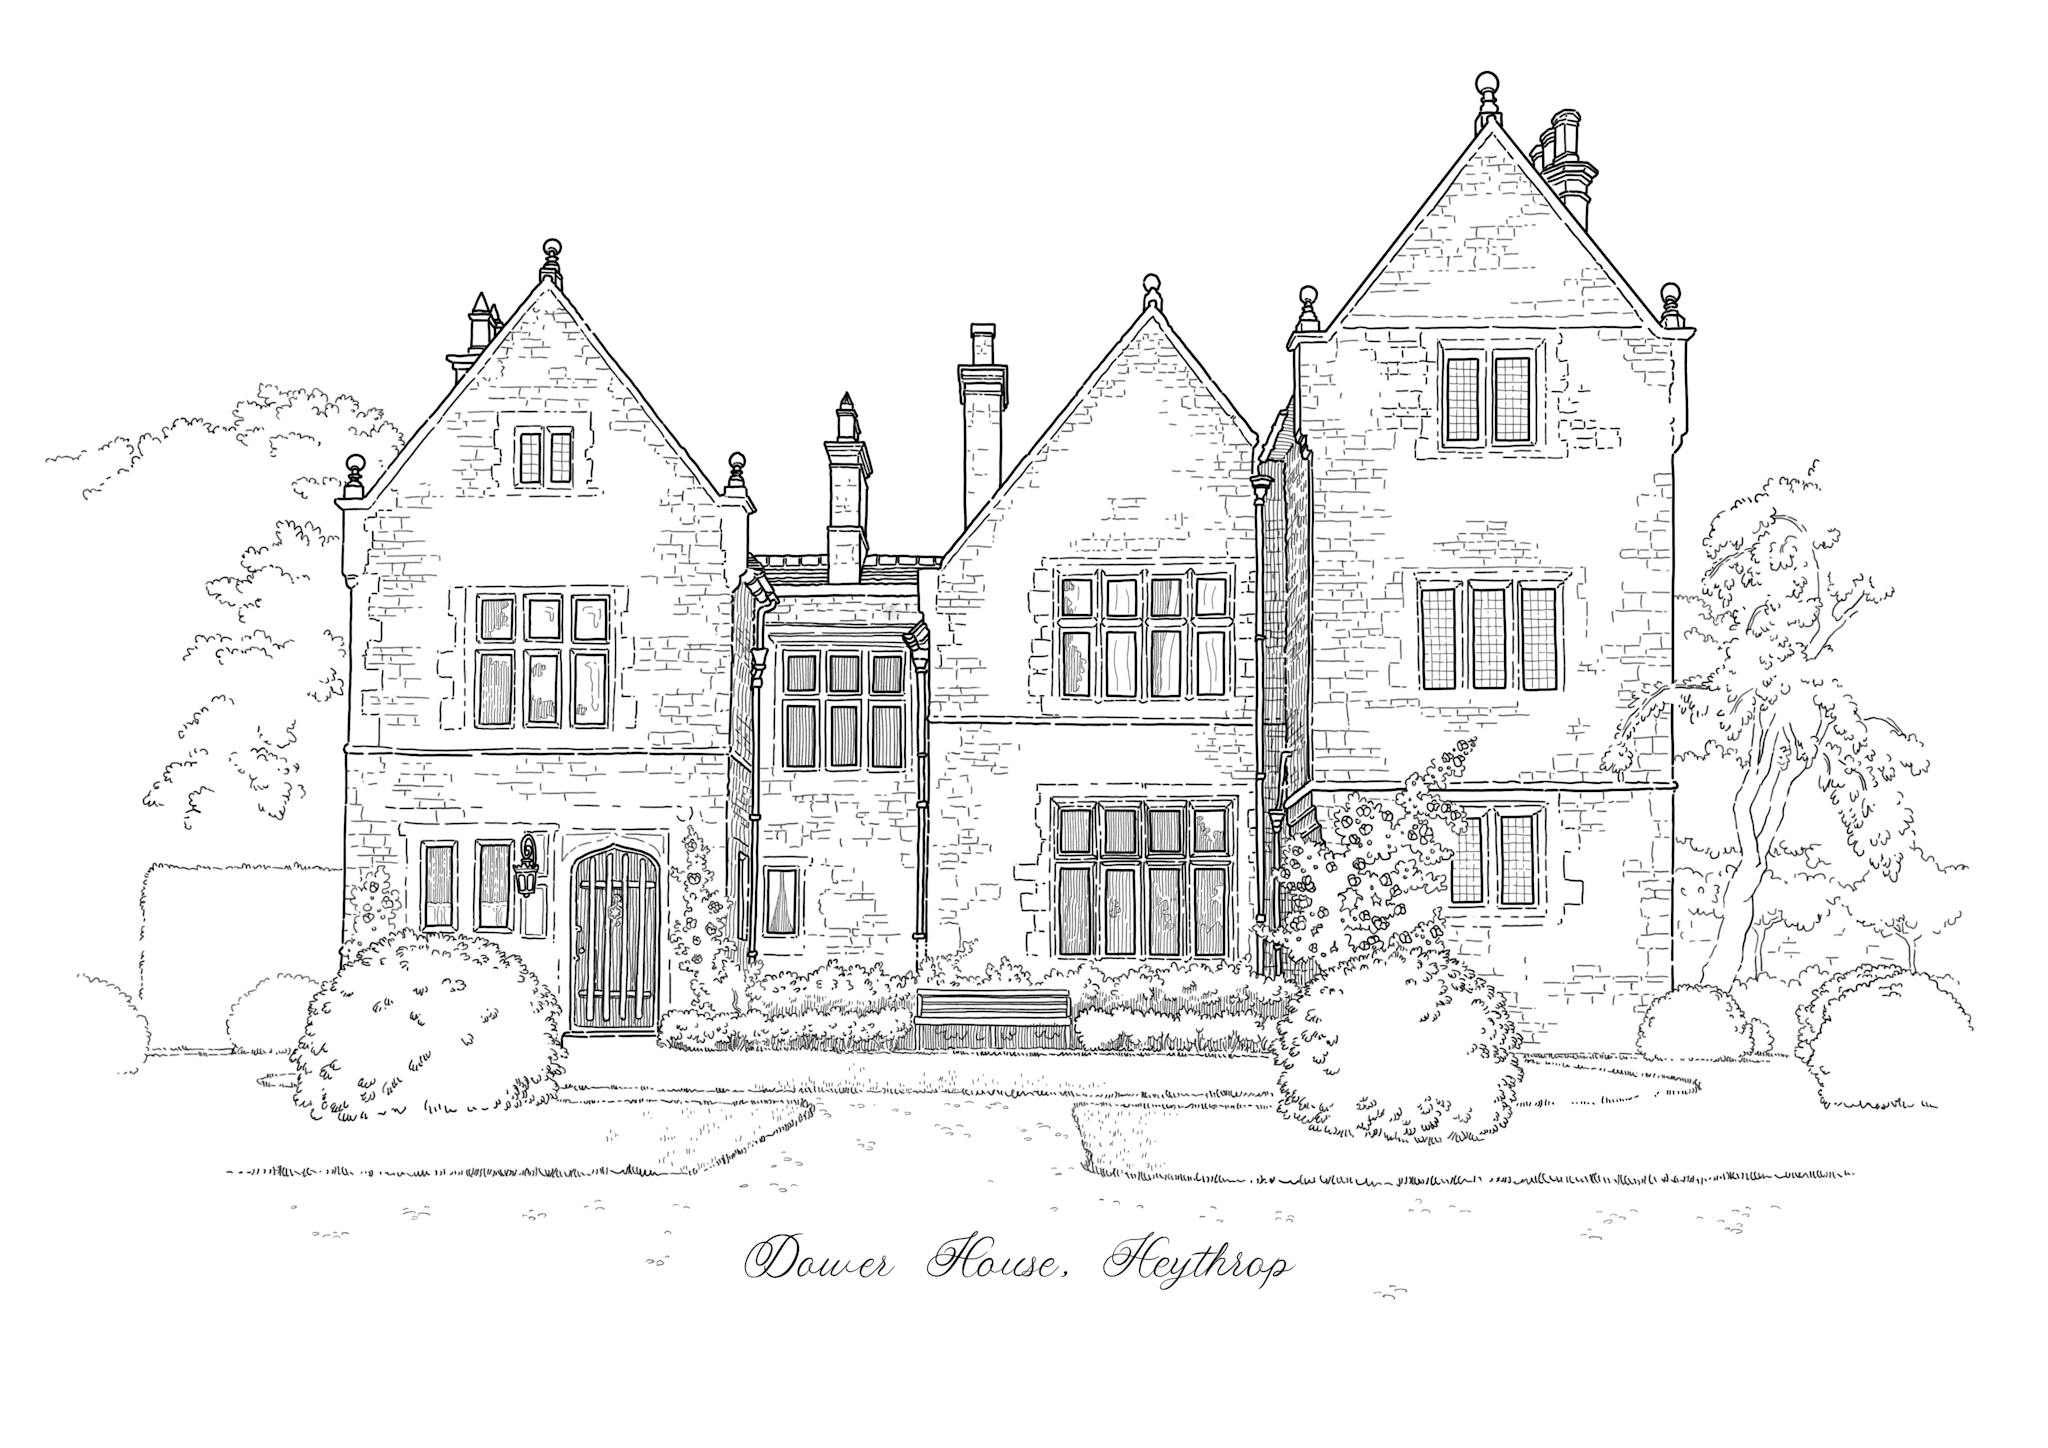 Illustration au trait noir sur fond blanc du manoir anglais Dower house à Heythrop. On y voit de la végétation et le batiment au centre.